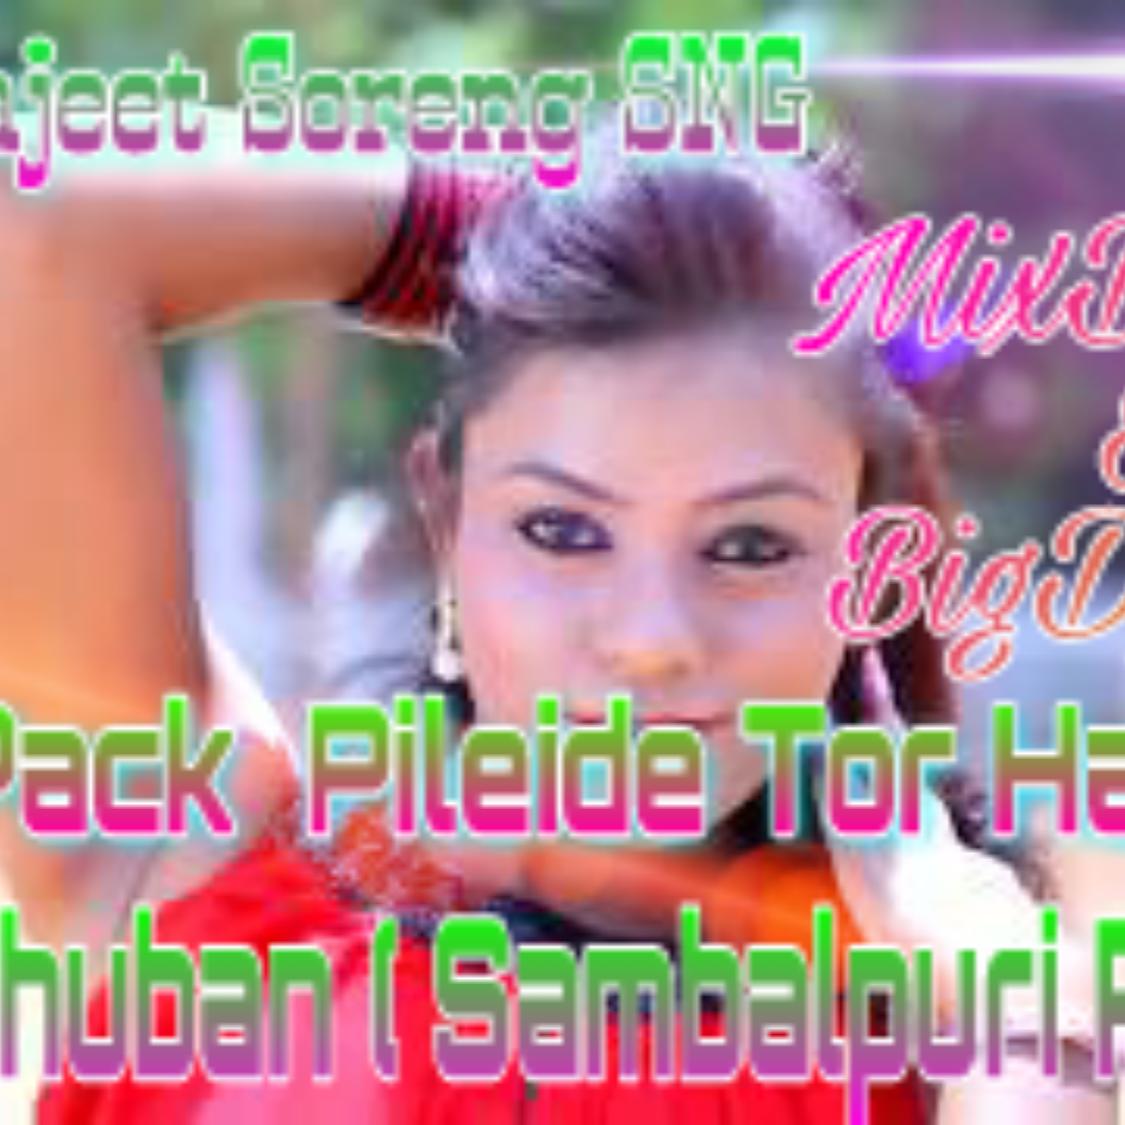 Last Pack Pilade Tor Haatu -Bhuban ( Remix ) Dj Indrajeet Soreng SNG